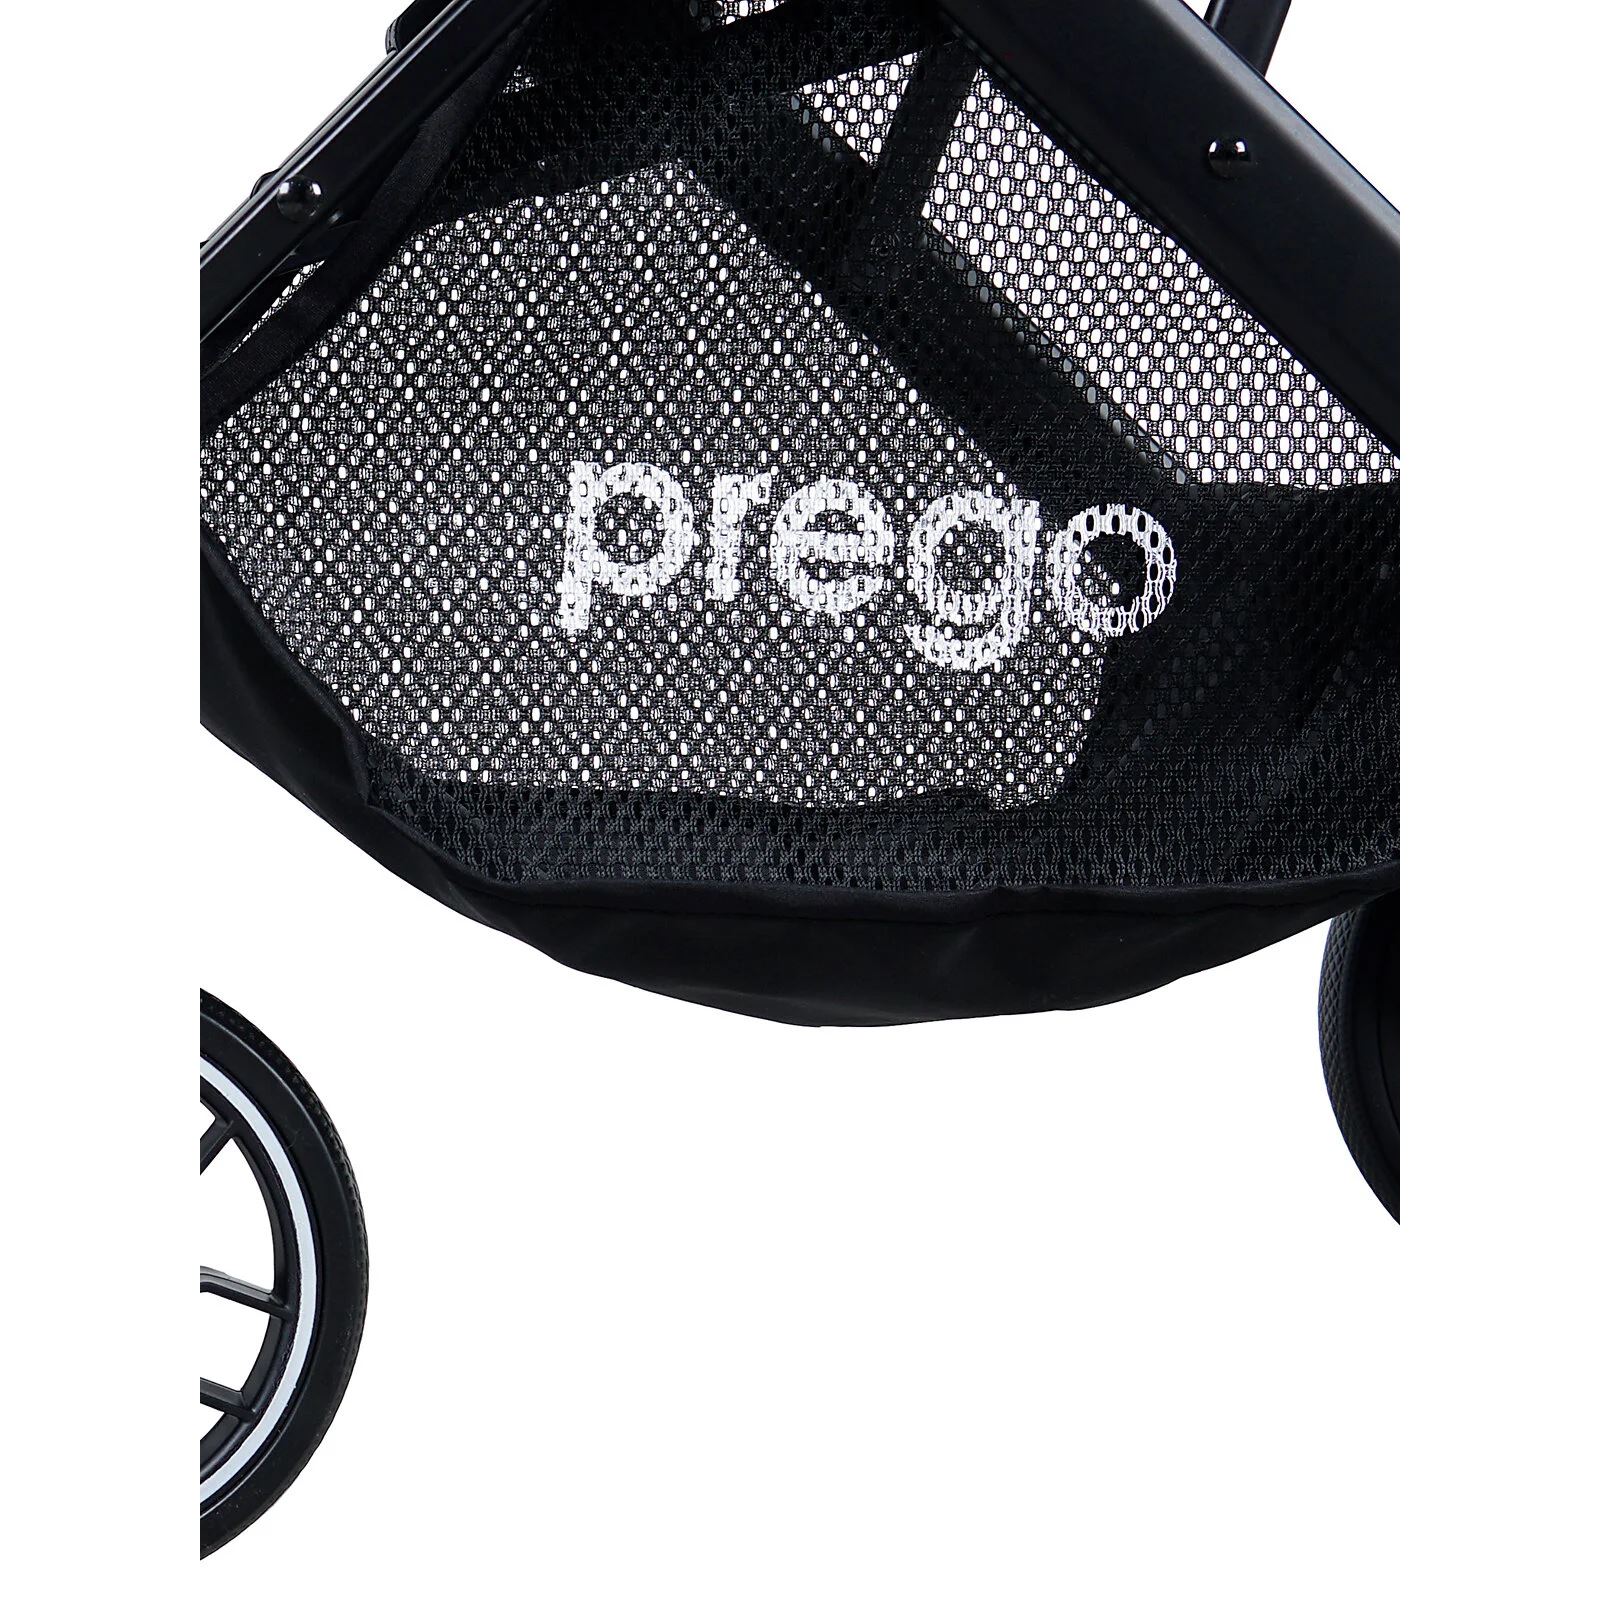 Prego Aria Plus Tek Yönlü Bebek Arabası Siyah